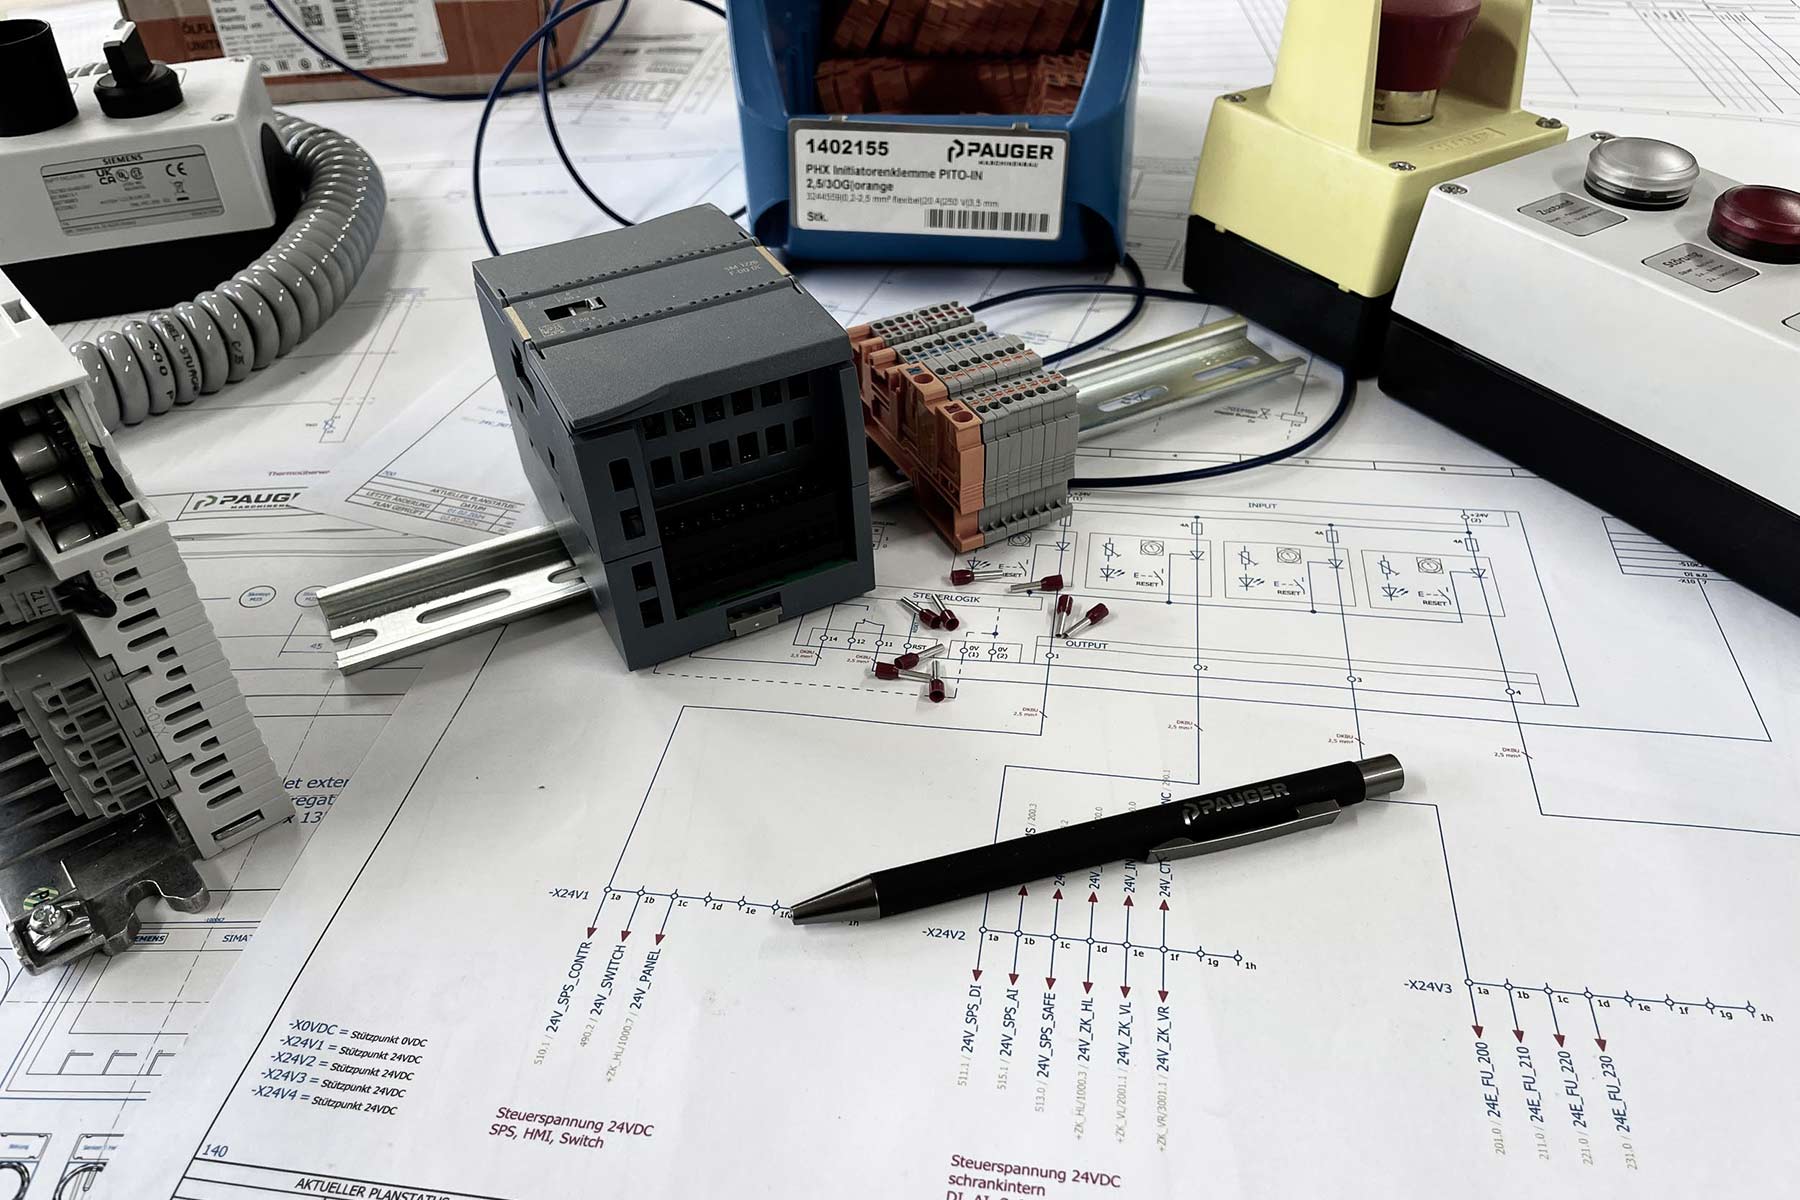 Eine Planzeichnung mit verschiedenen elektrischen Bauteilen